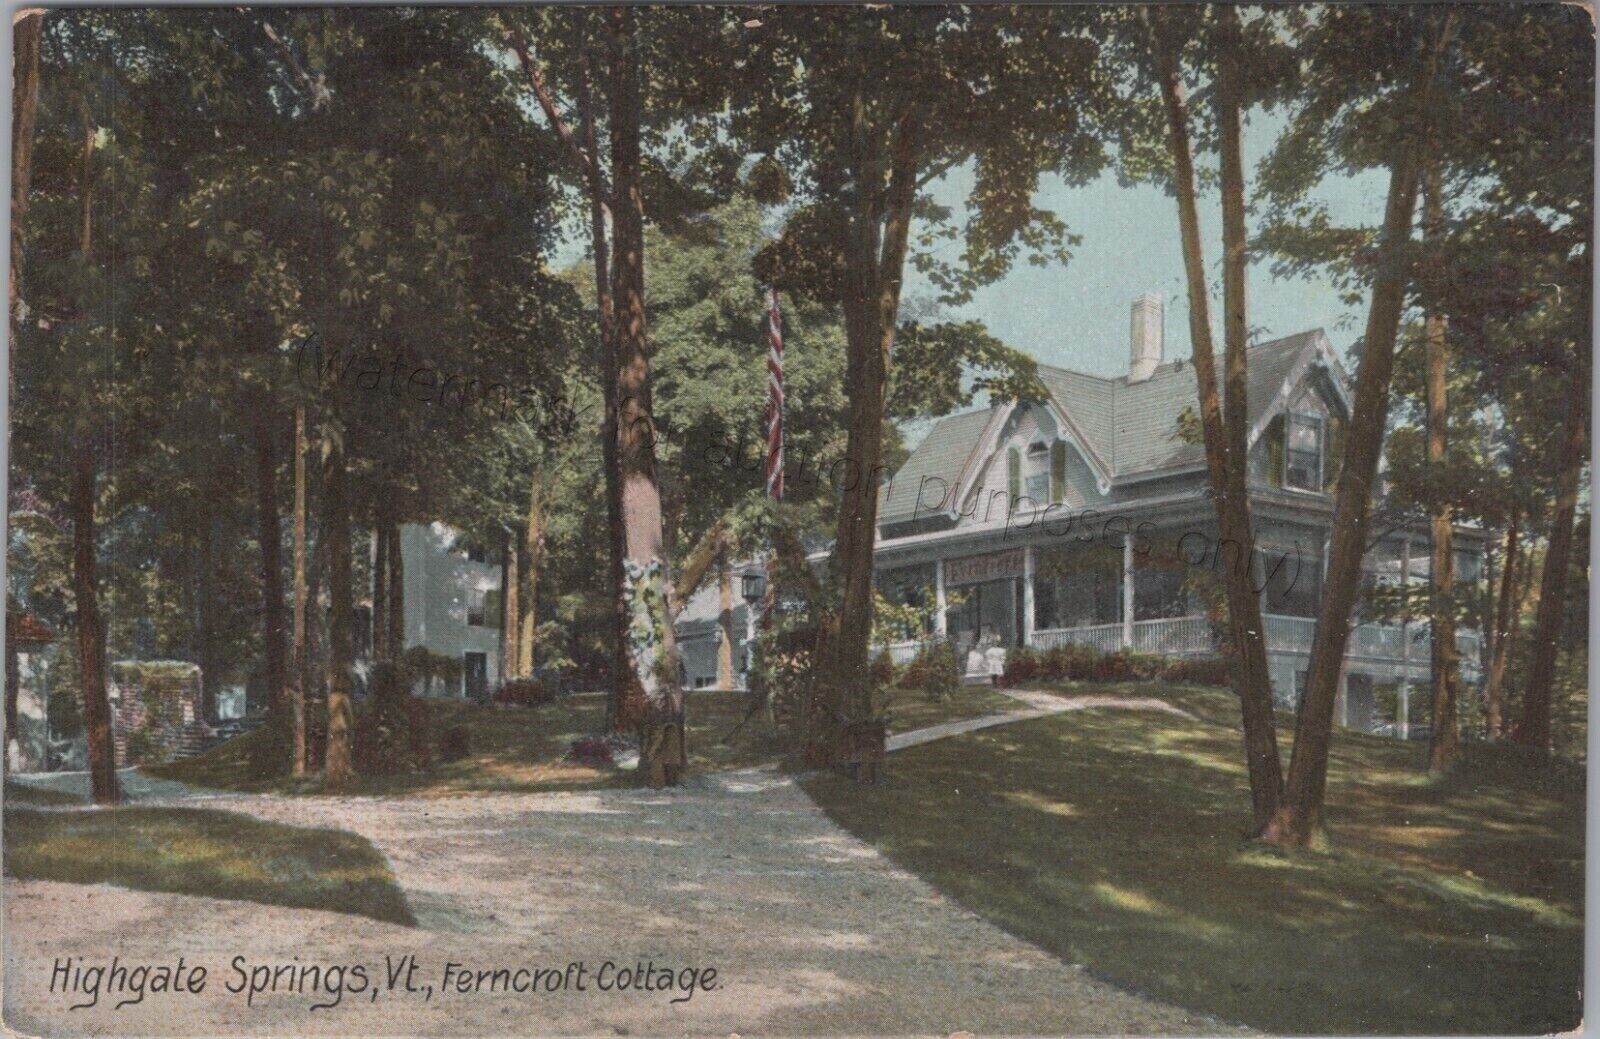 Highgate Springs, VT - Ferncroft Cottage - Vintage Franklin Co, Vermont Postcard